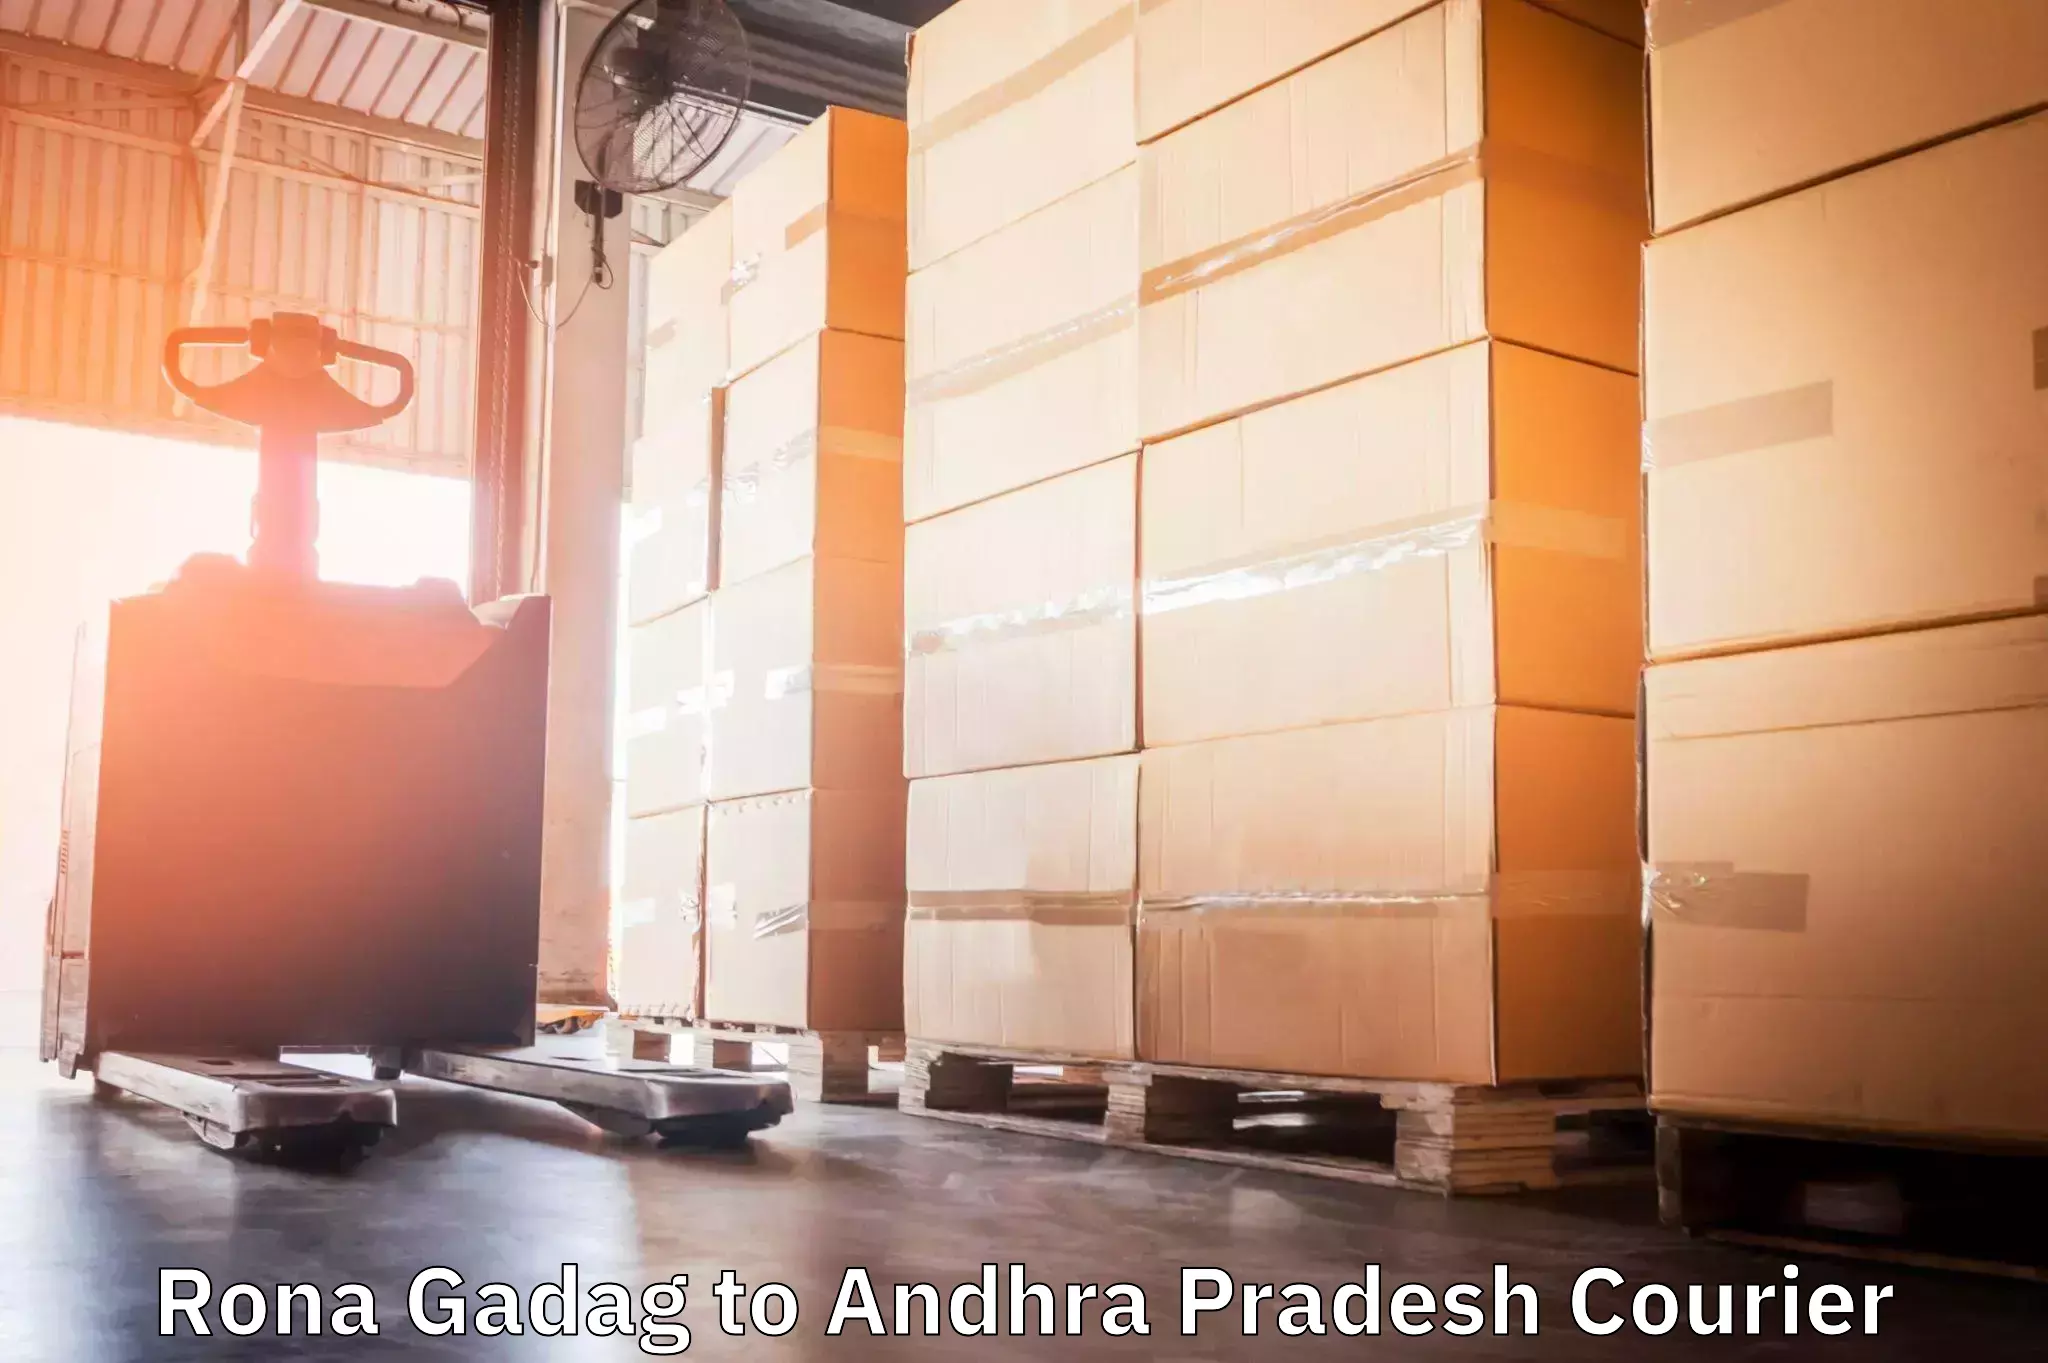 24-hour courier service Rona Gadag to Andhra Pradesh